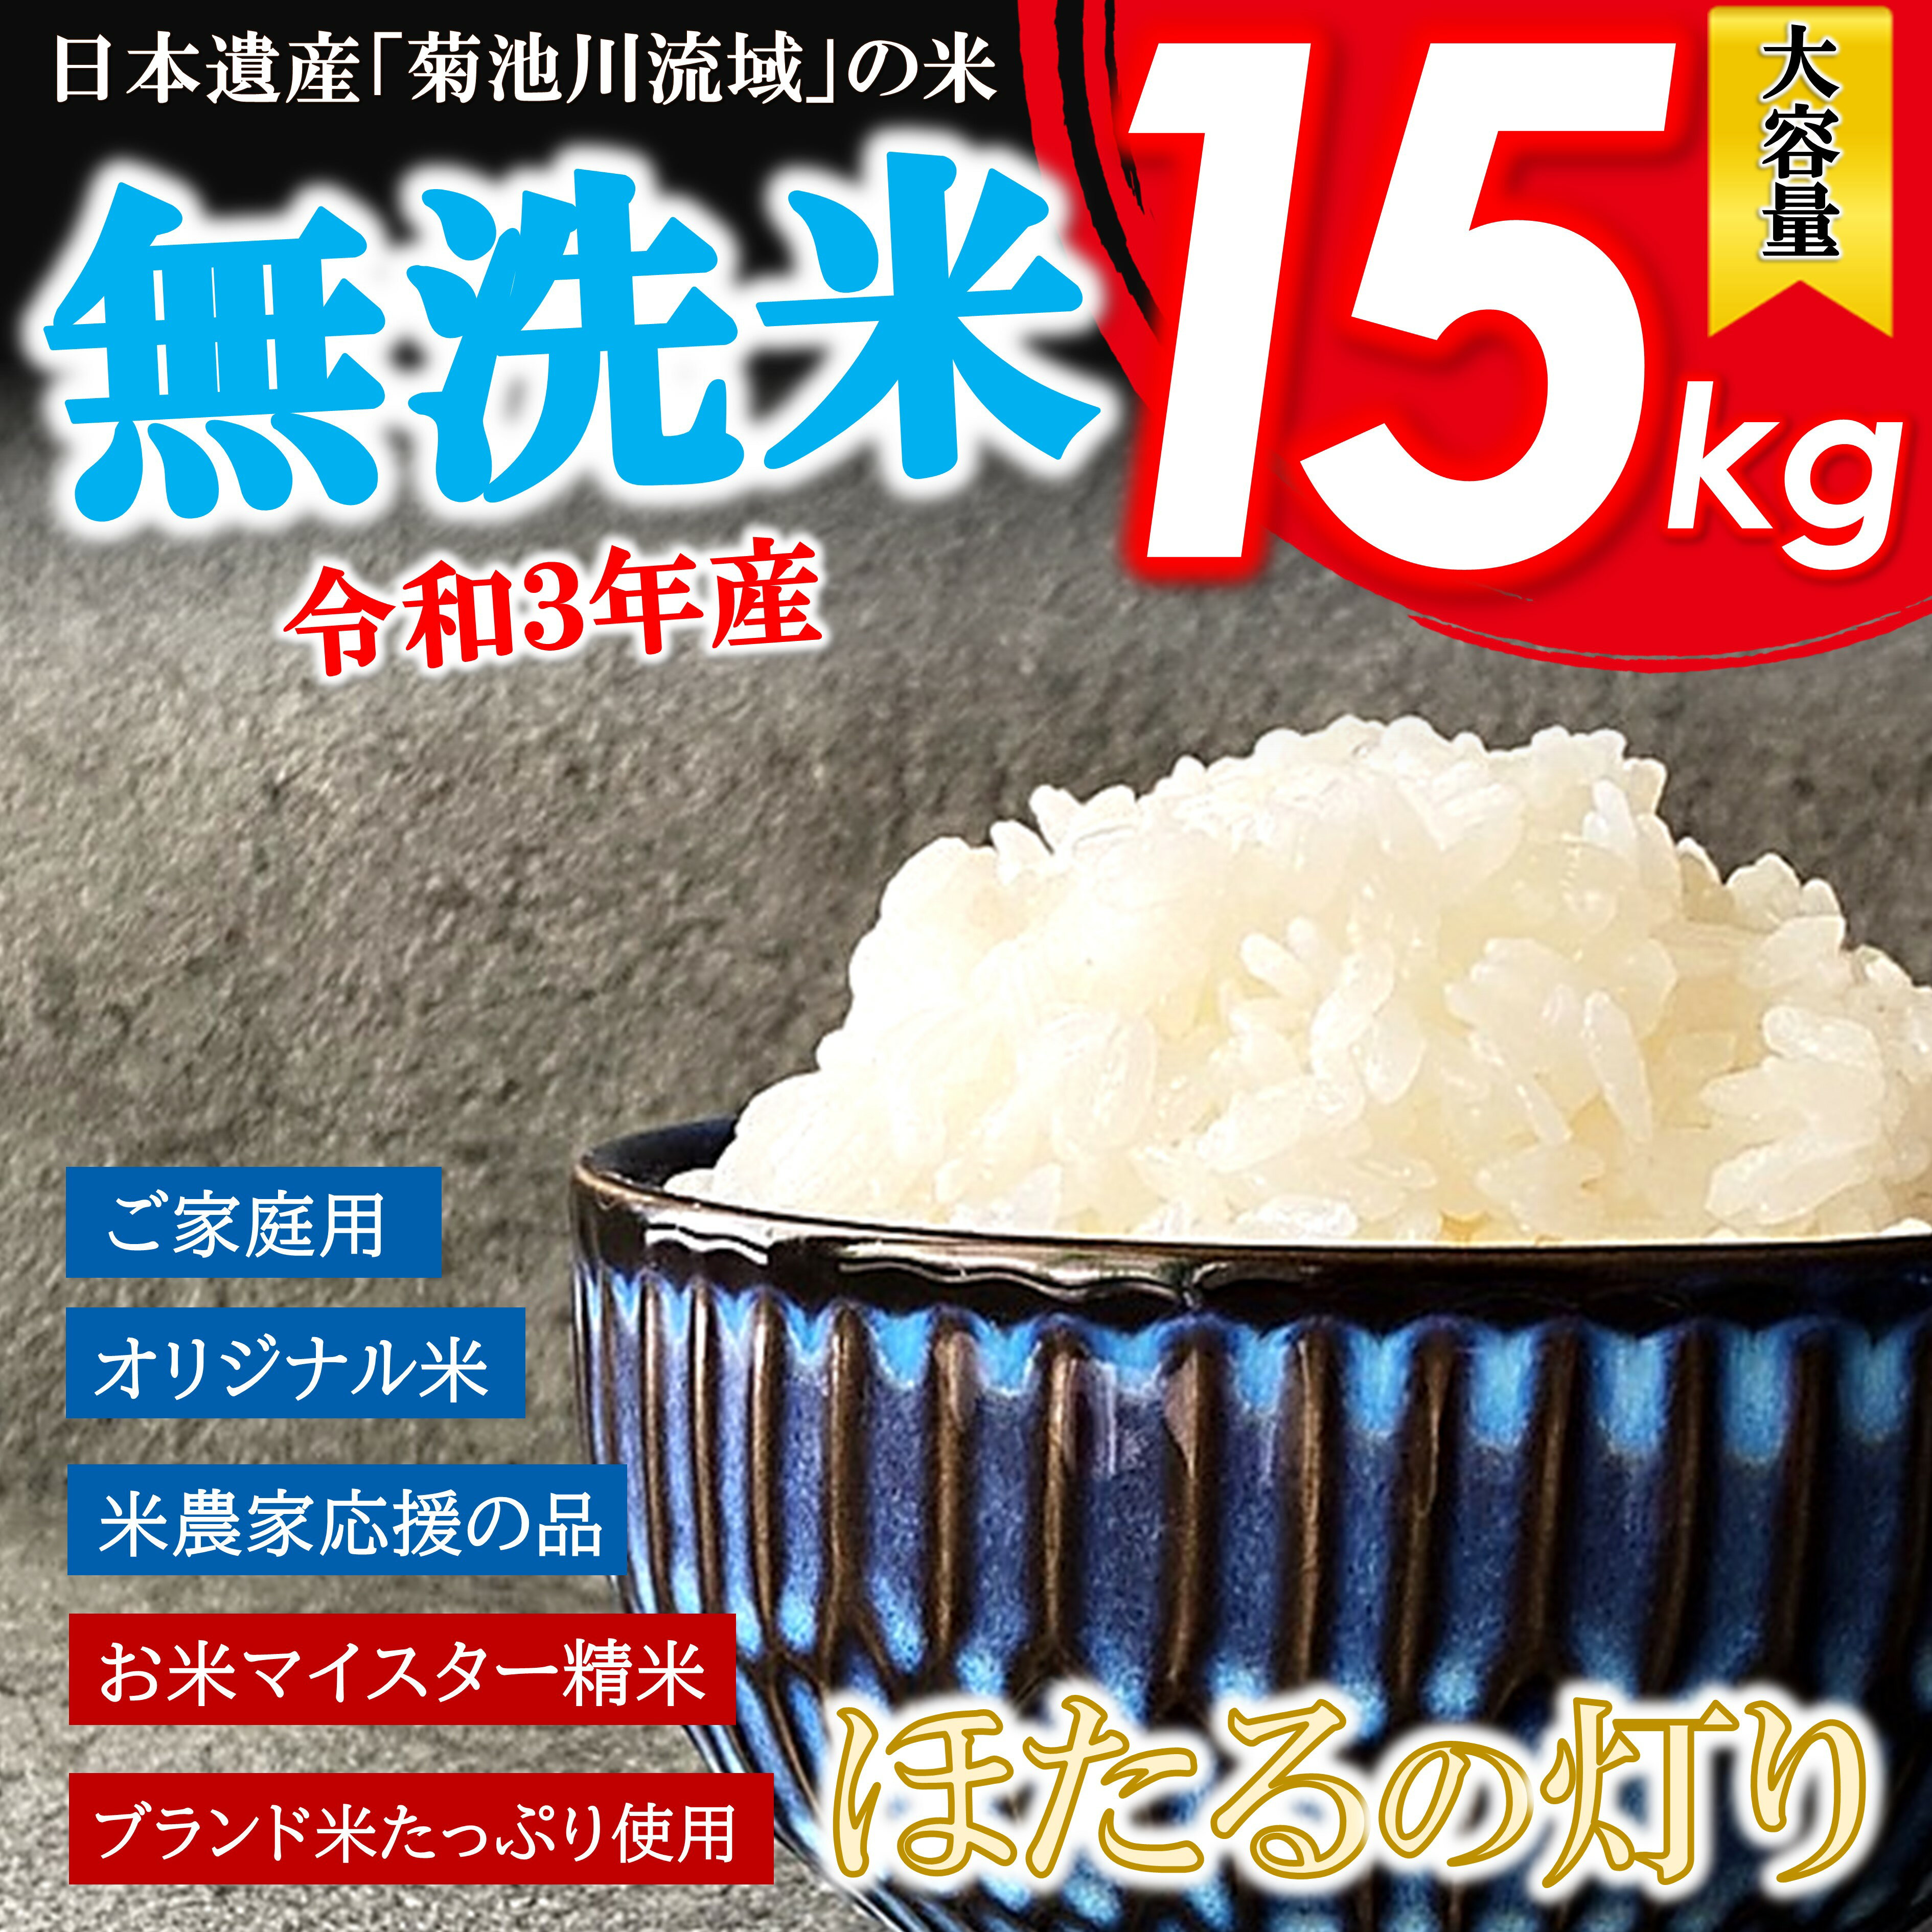 無洗米 | ふるさと納税の返礼品一覧 (人気順)【2022年】 | ふるさと納税ガイド